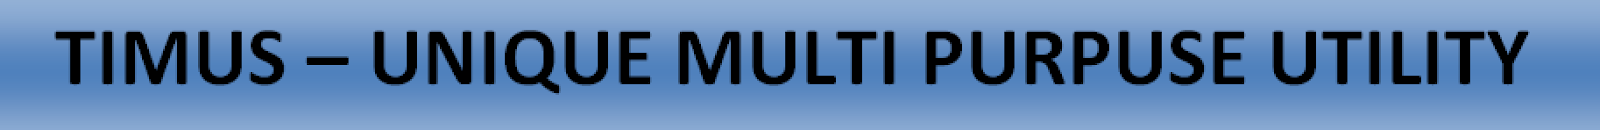 TIMUS-Unique Multi Purpose Utility